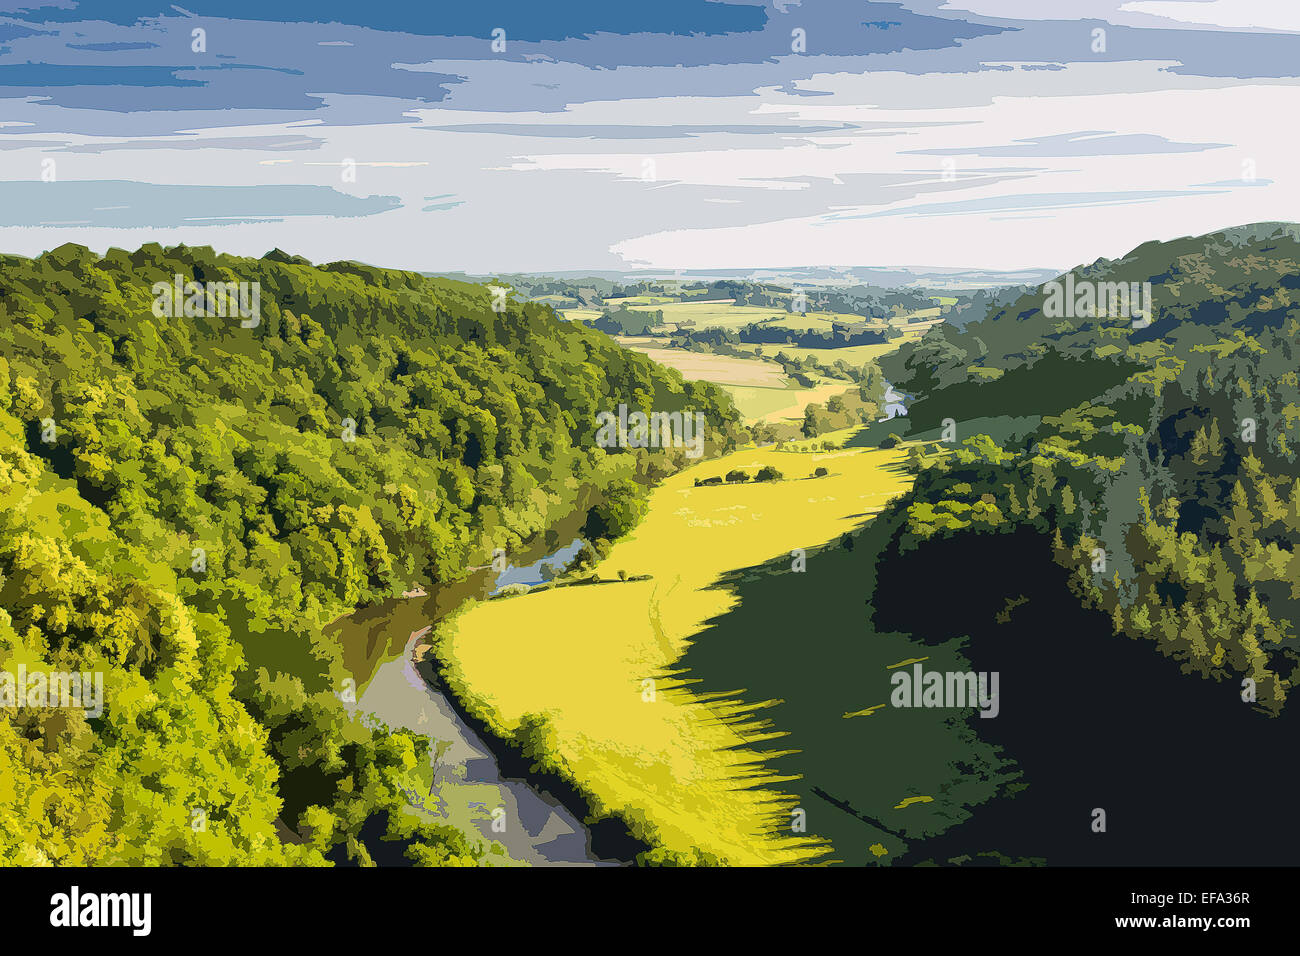 Plakat-Stil zur Veranschaulichung der Wye Valley von Symonds Yat Rock, Herefordshire, England, UK Stockfoto